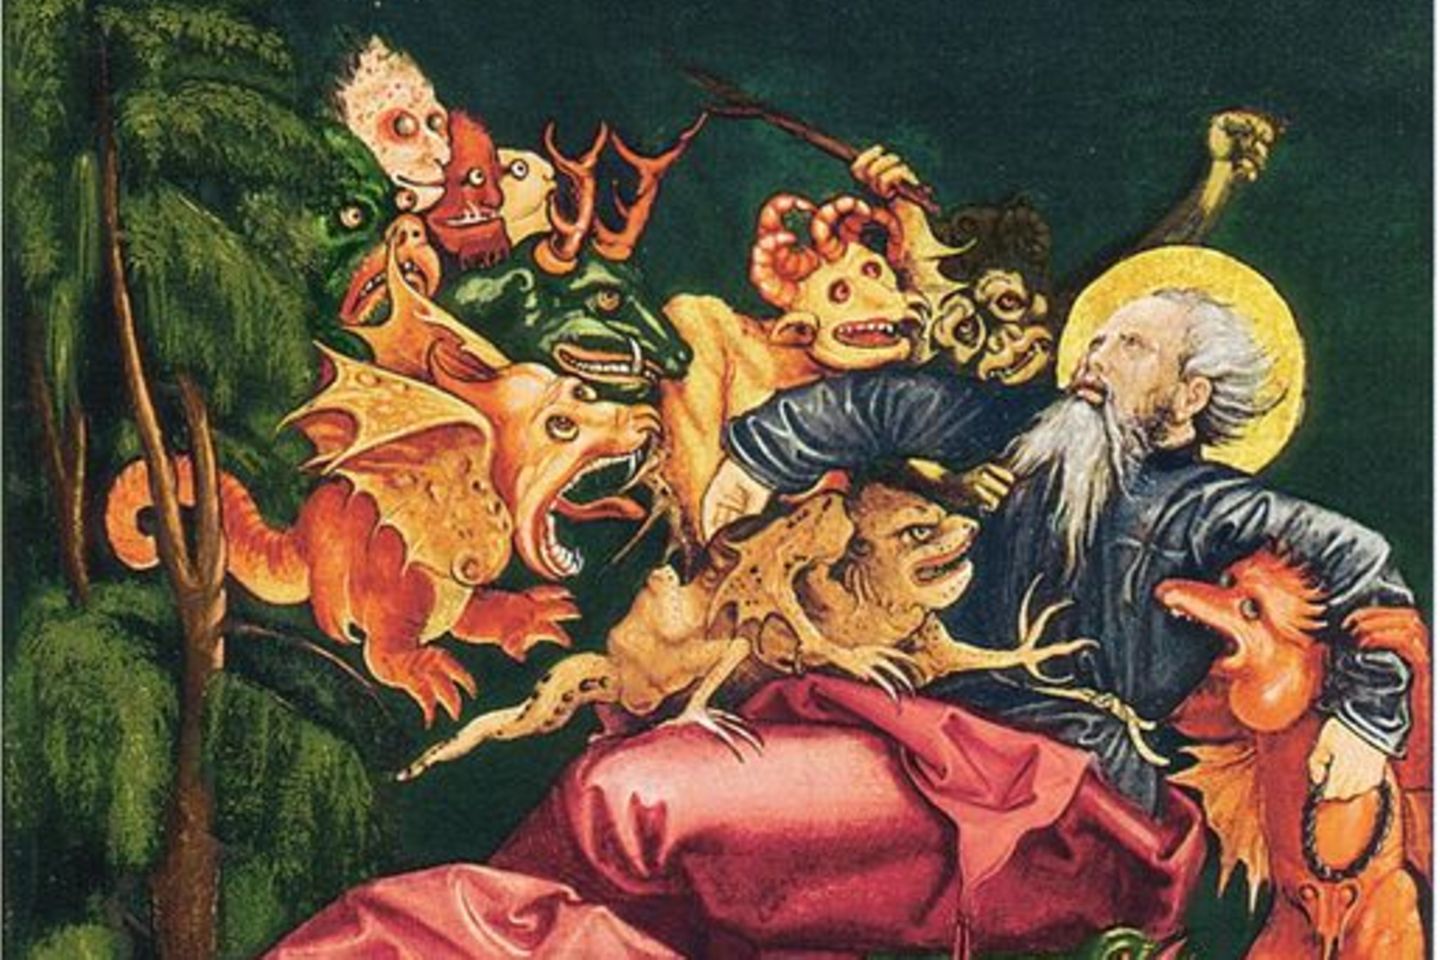 Dämonen, so glaubte man im Mittelalter, würden Menschen in ihrem Alltag quälen und verführen. Hier eine Darstellung des Heiligen Antonius um 1520 aus dem Wallraf-Richartz-Museum in Köln